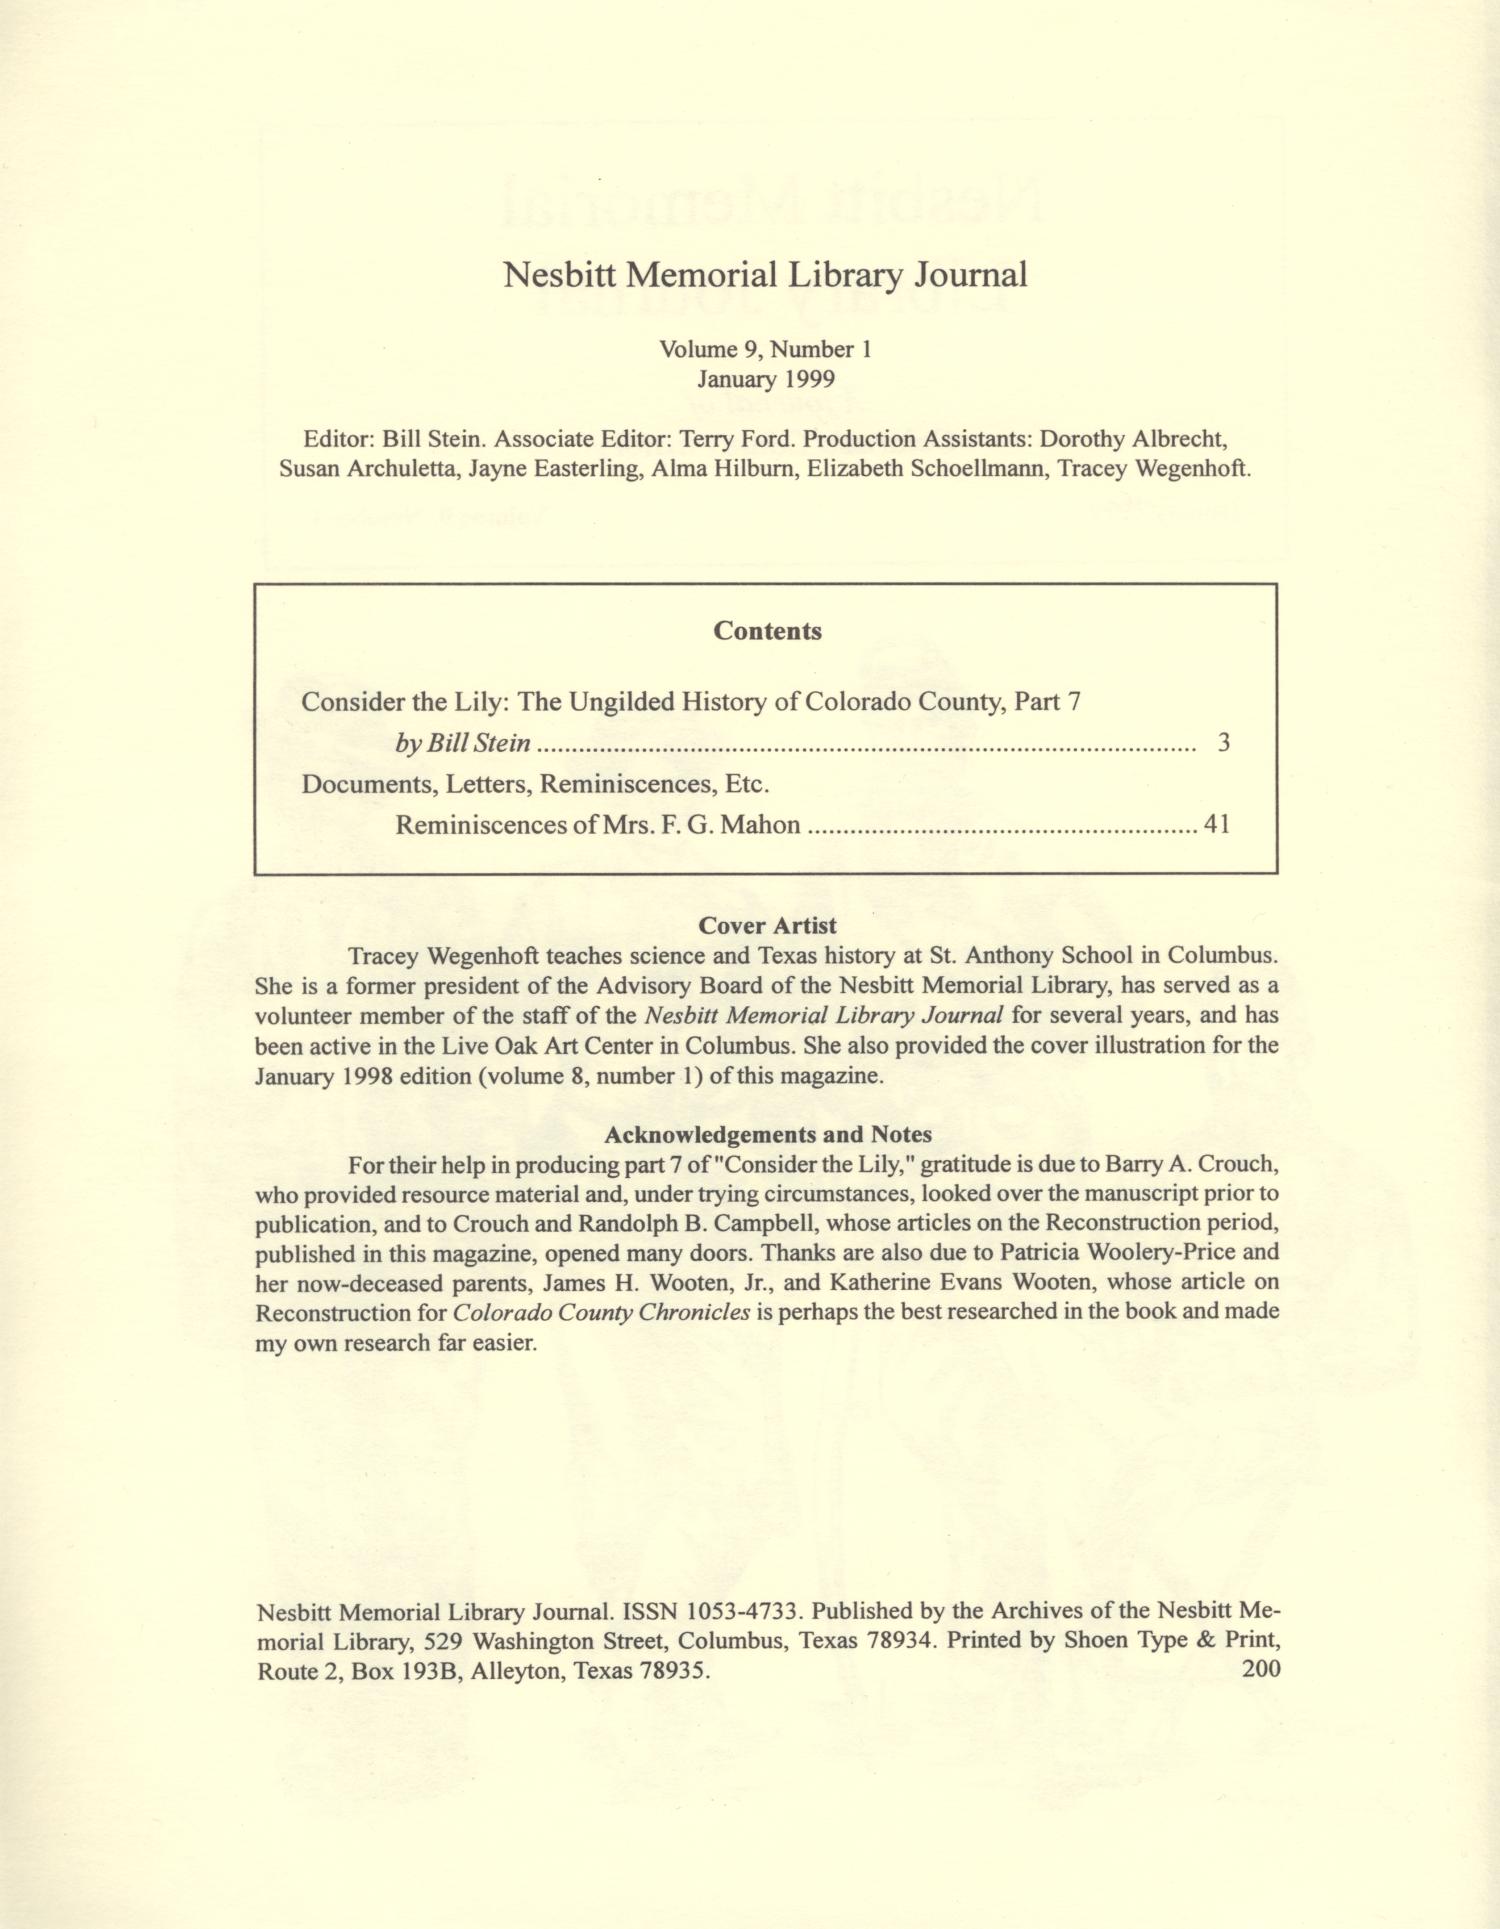 Nesbitt Memorial Library Journal, Volume 9, Number 1, January 1999
                                                
                                                    Front Inside
                                                